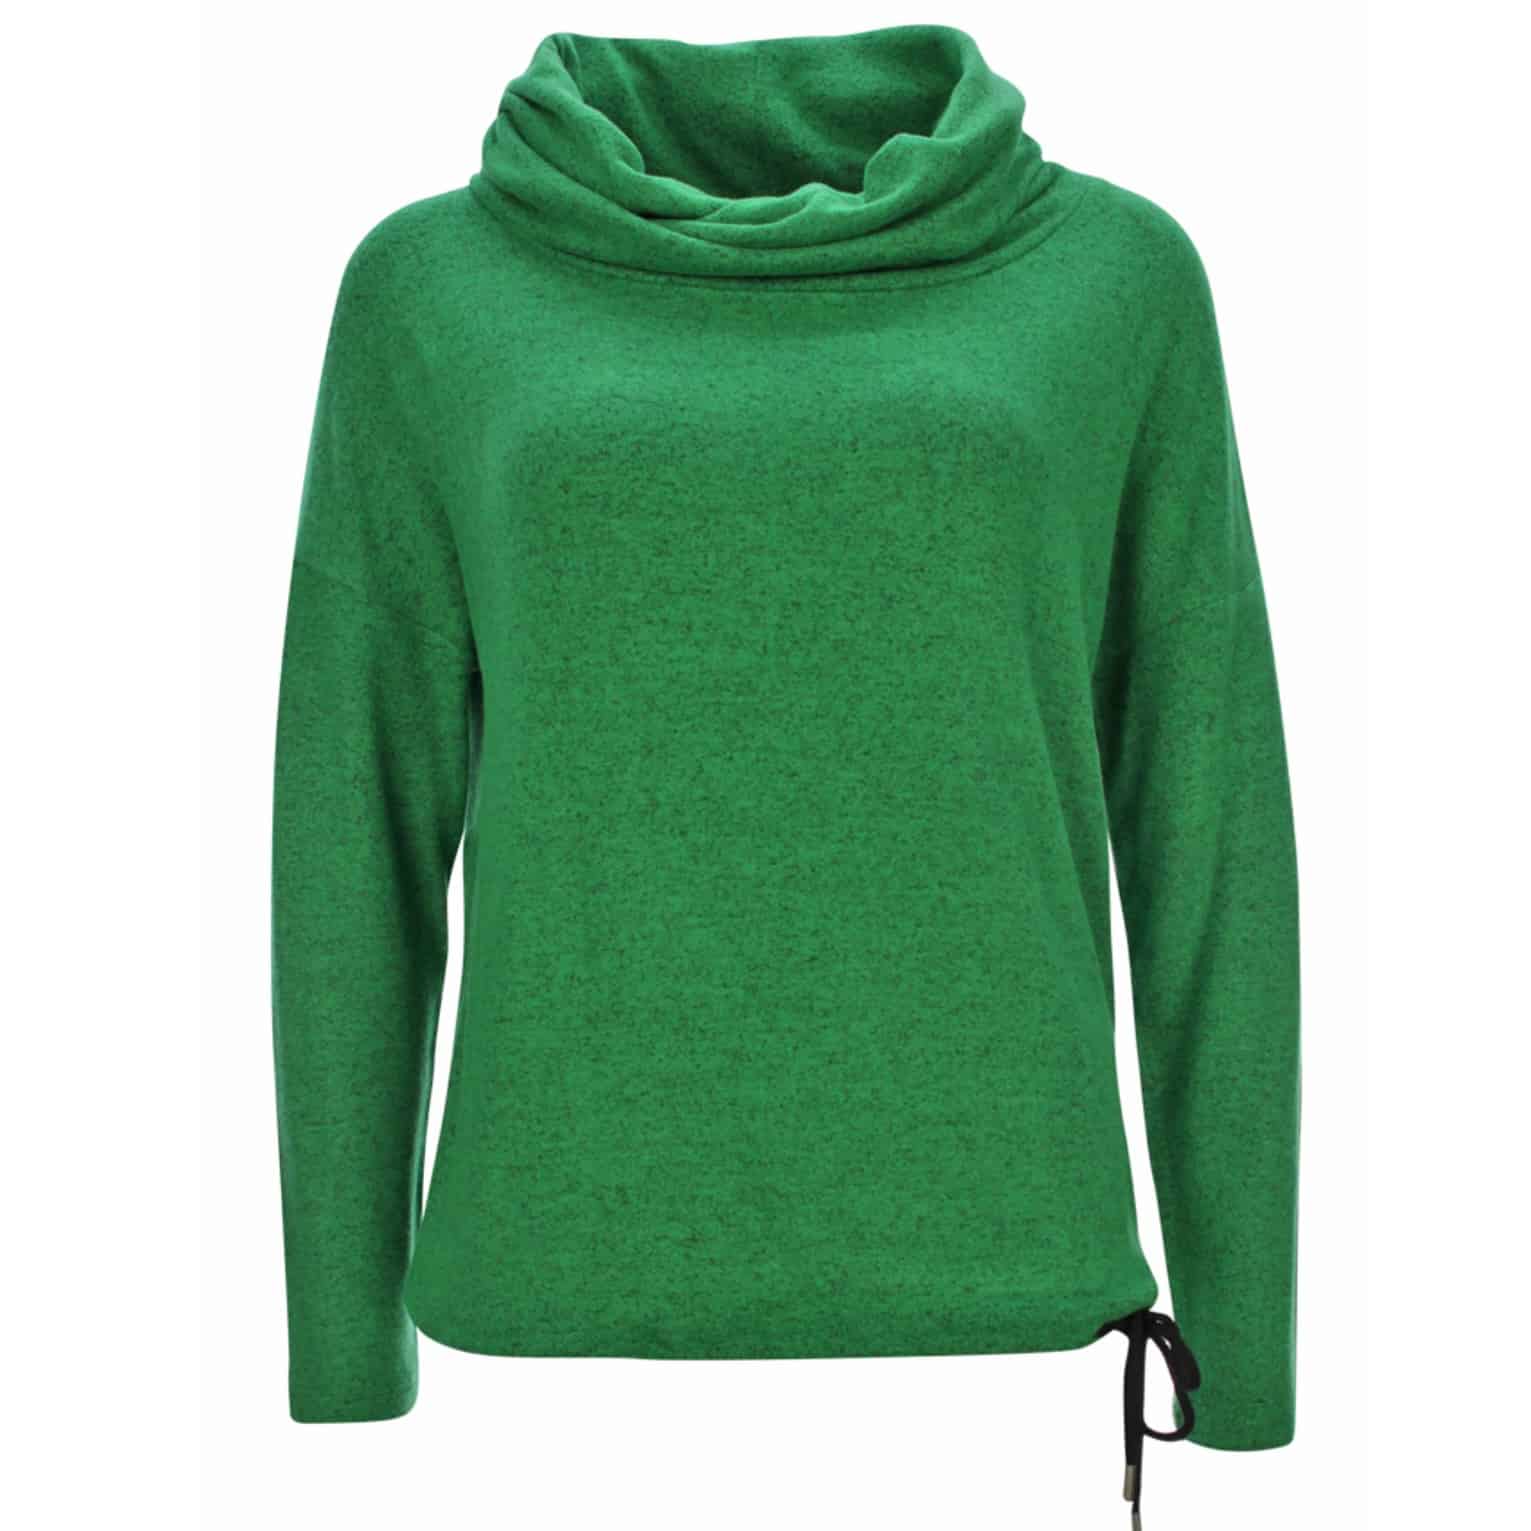 Melierter Pullover von Kenny S in grün mit halsfernem Rollkragen